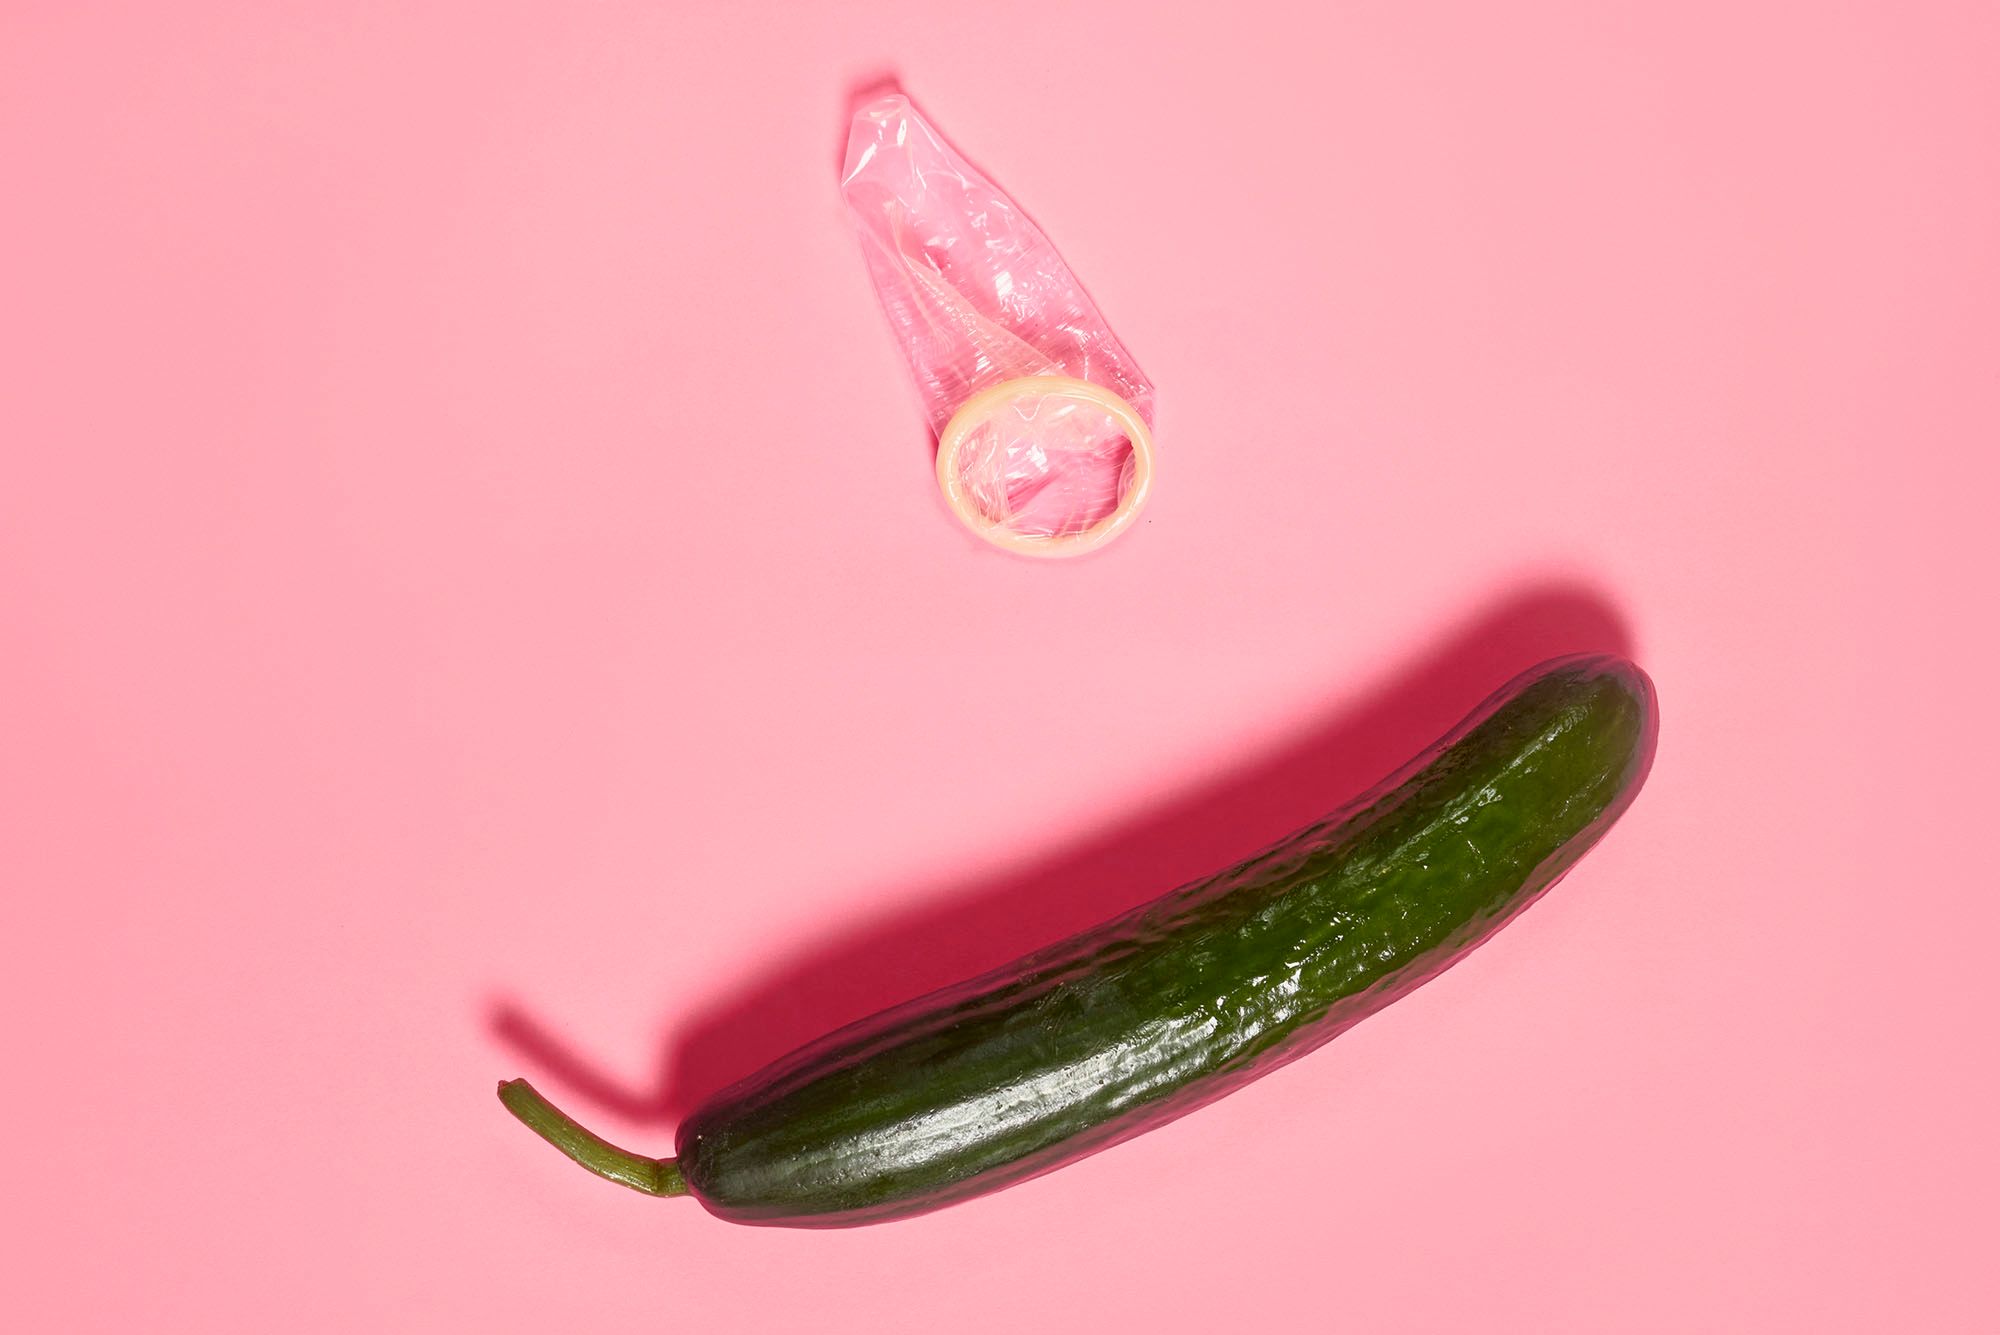 Gurke mit ausgepacktem Kondom auf pinkem Hintergrund